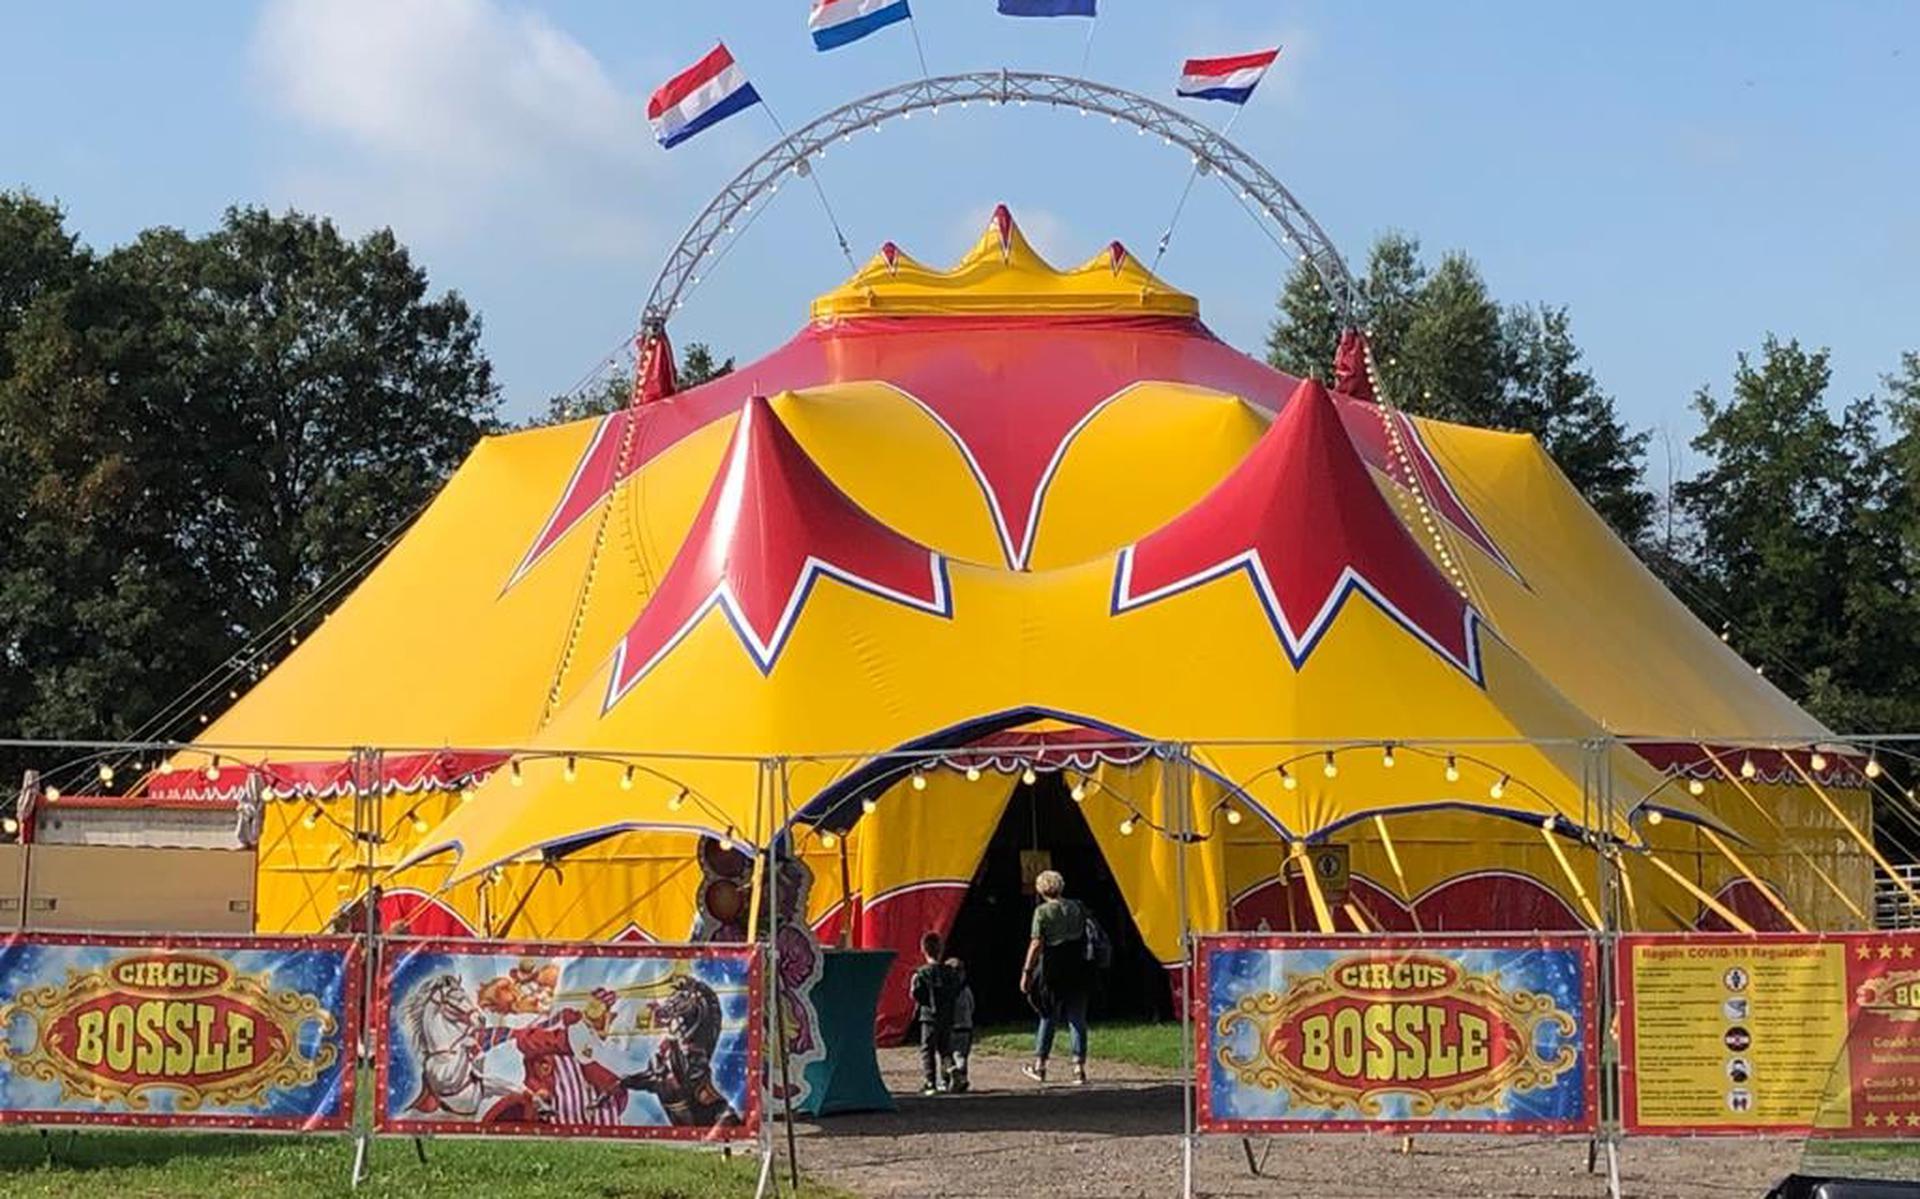 De tent van Circus Bossle.